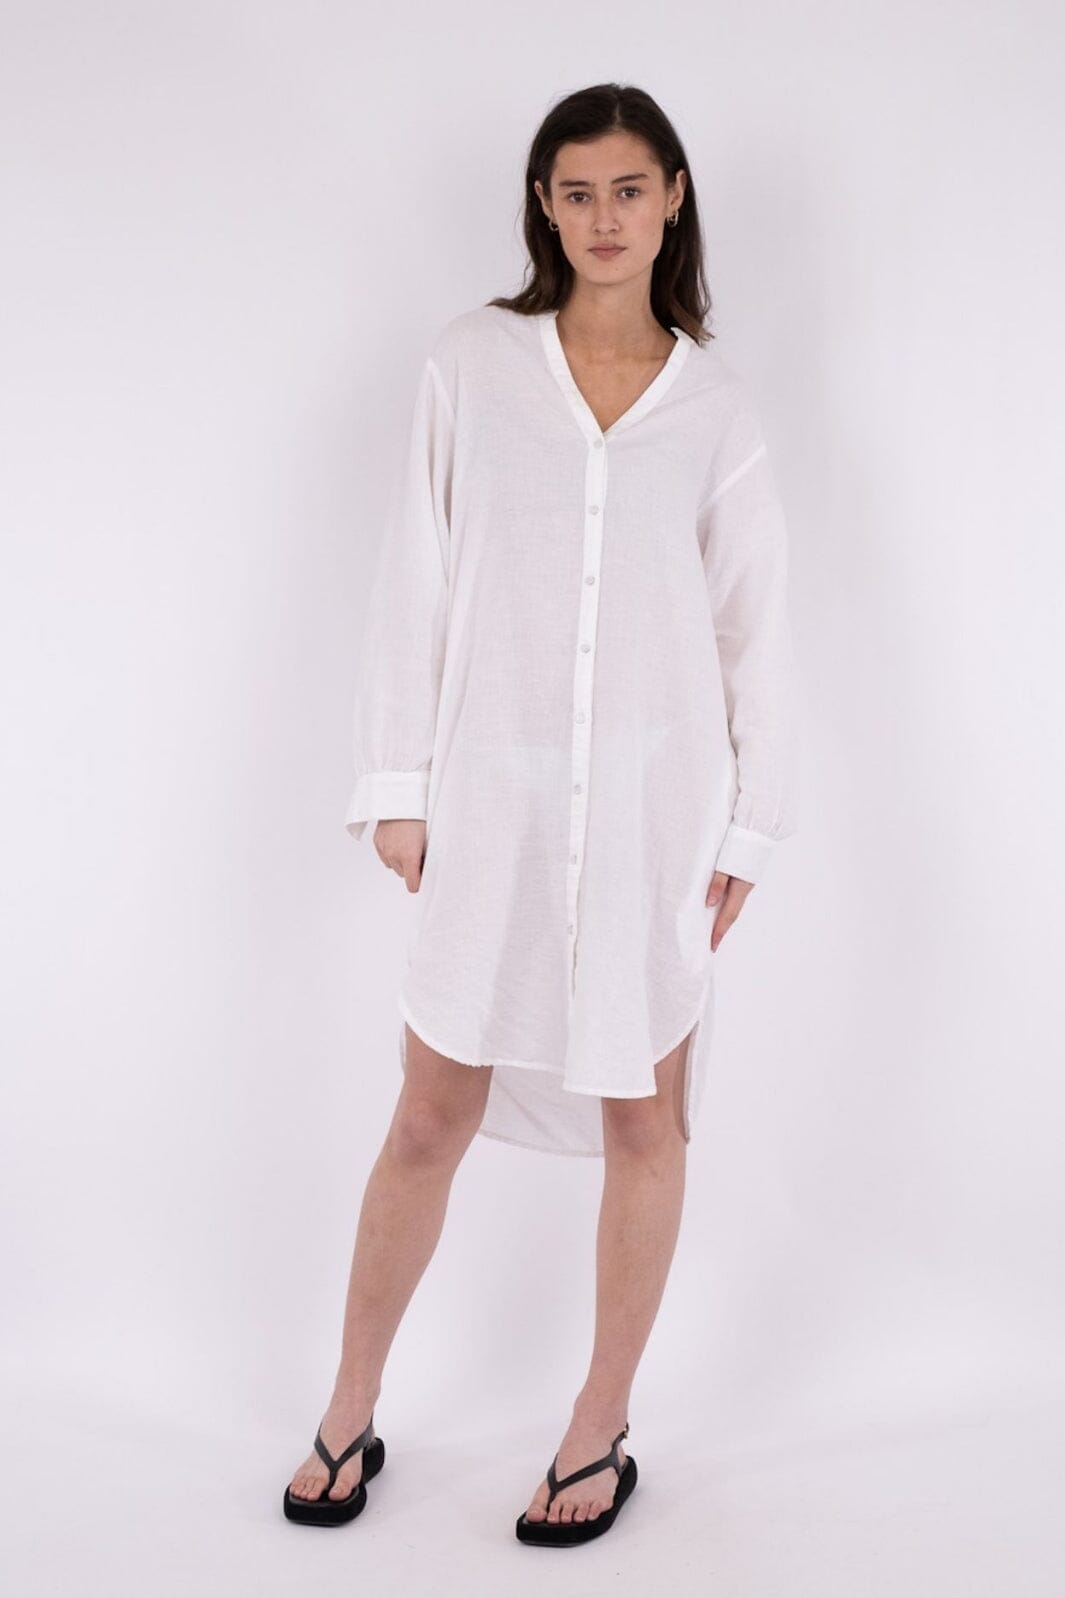 Neo Noir - Korbela Linen Shirtdress - White Kjoler 